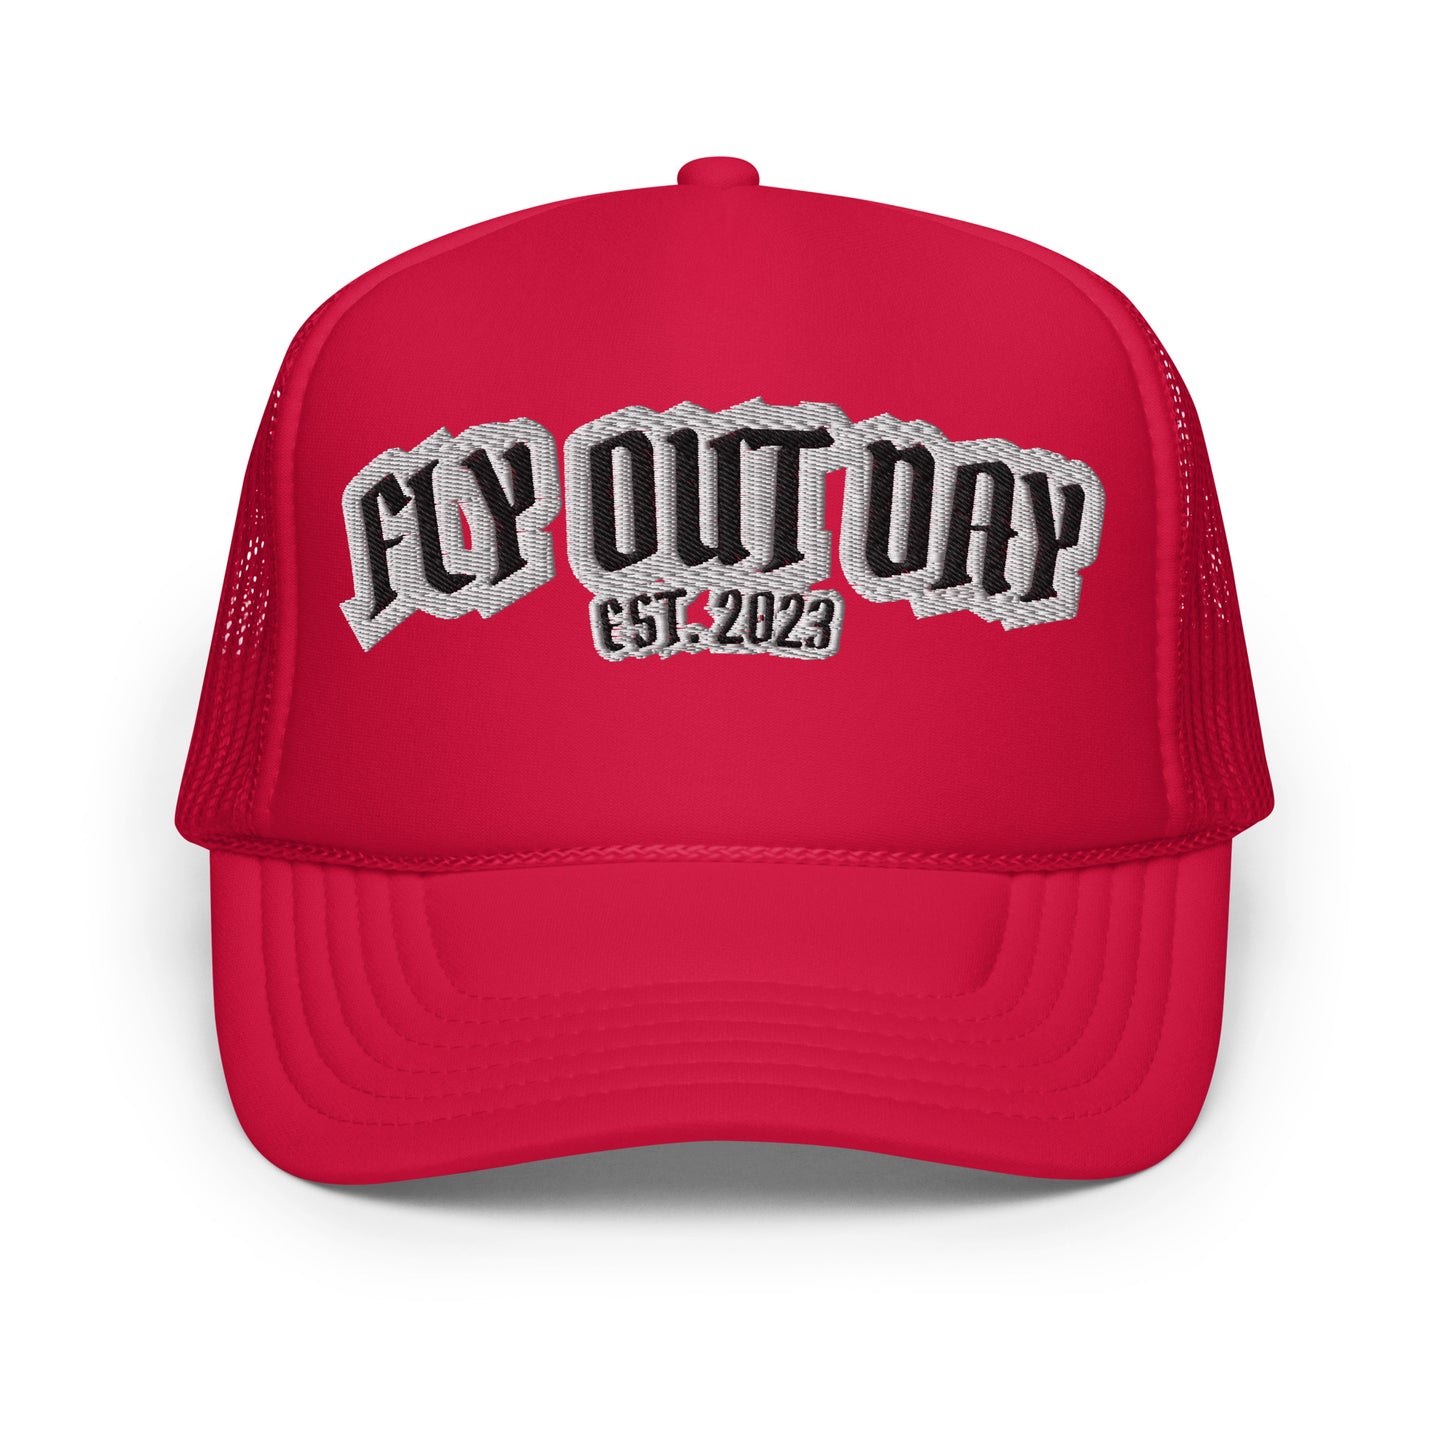 Fly Out Day Foam Trucker Hat